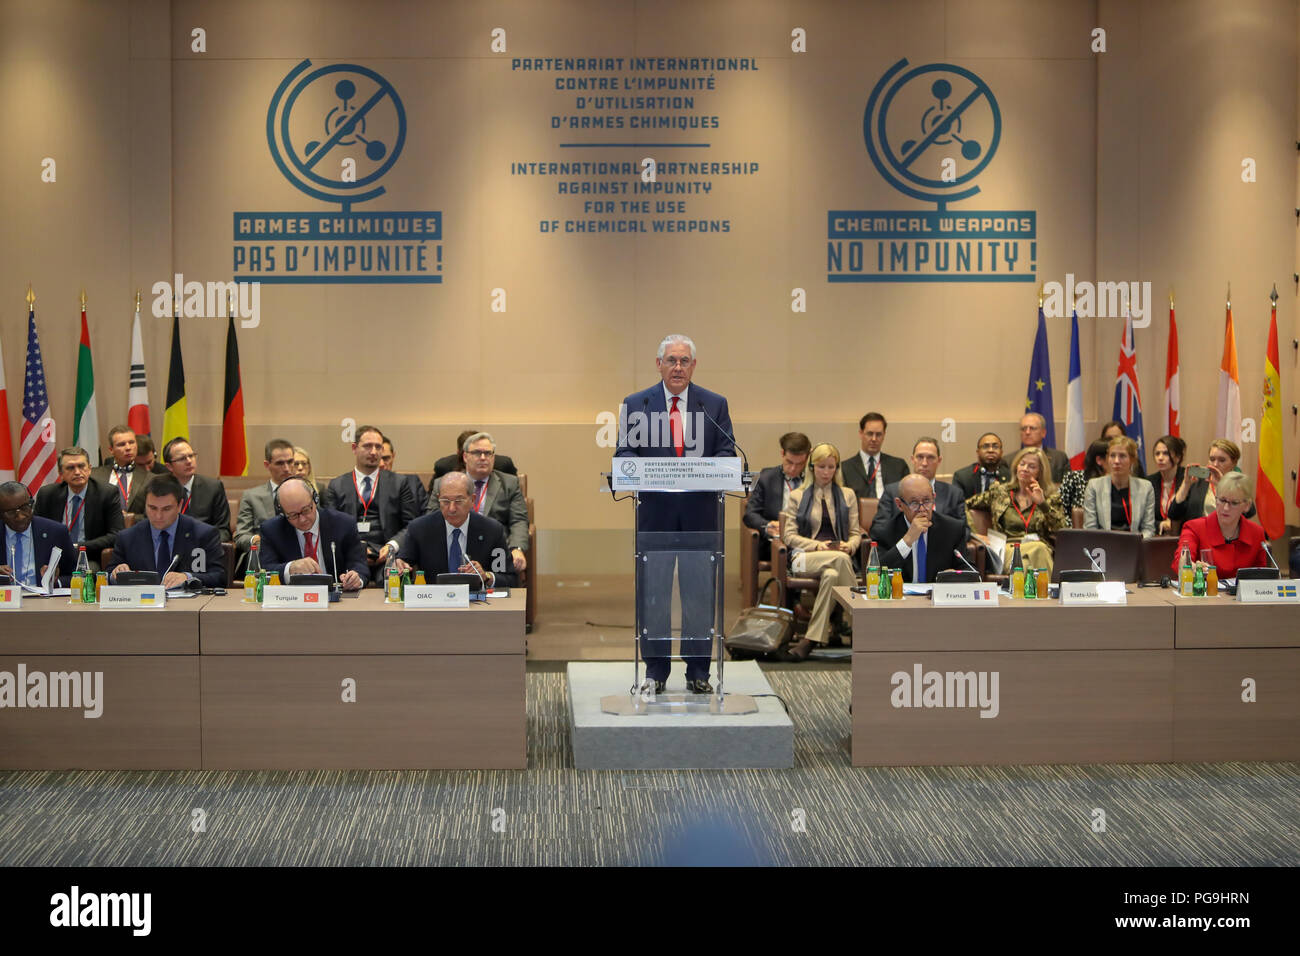 La secrétaire d'État des États-Unis, Rex Tillerson prononce une allocution à la conférence de lancement du Partenariat international contre l'impunité pour l'utilisation d'armes chimiques à Paris, France le 23 janvier 2018. Banque D'Images